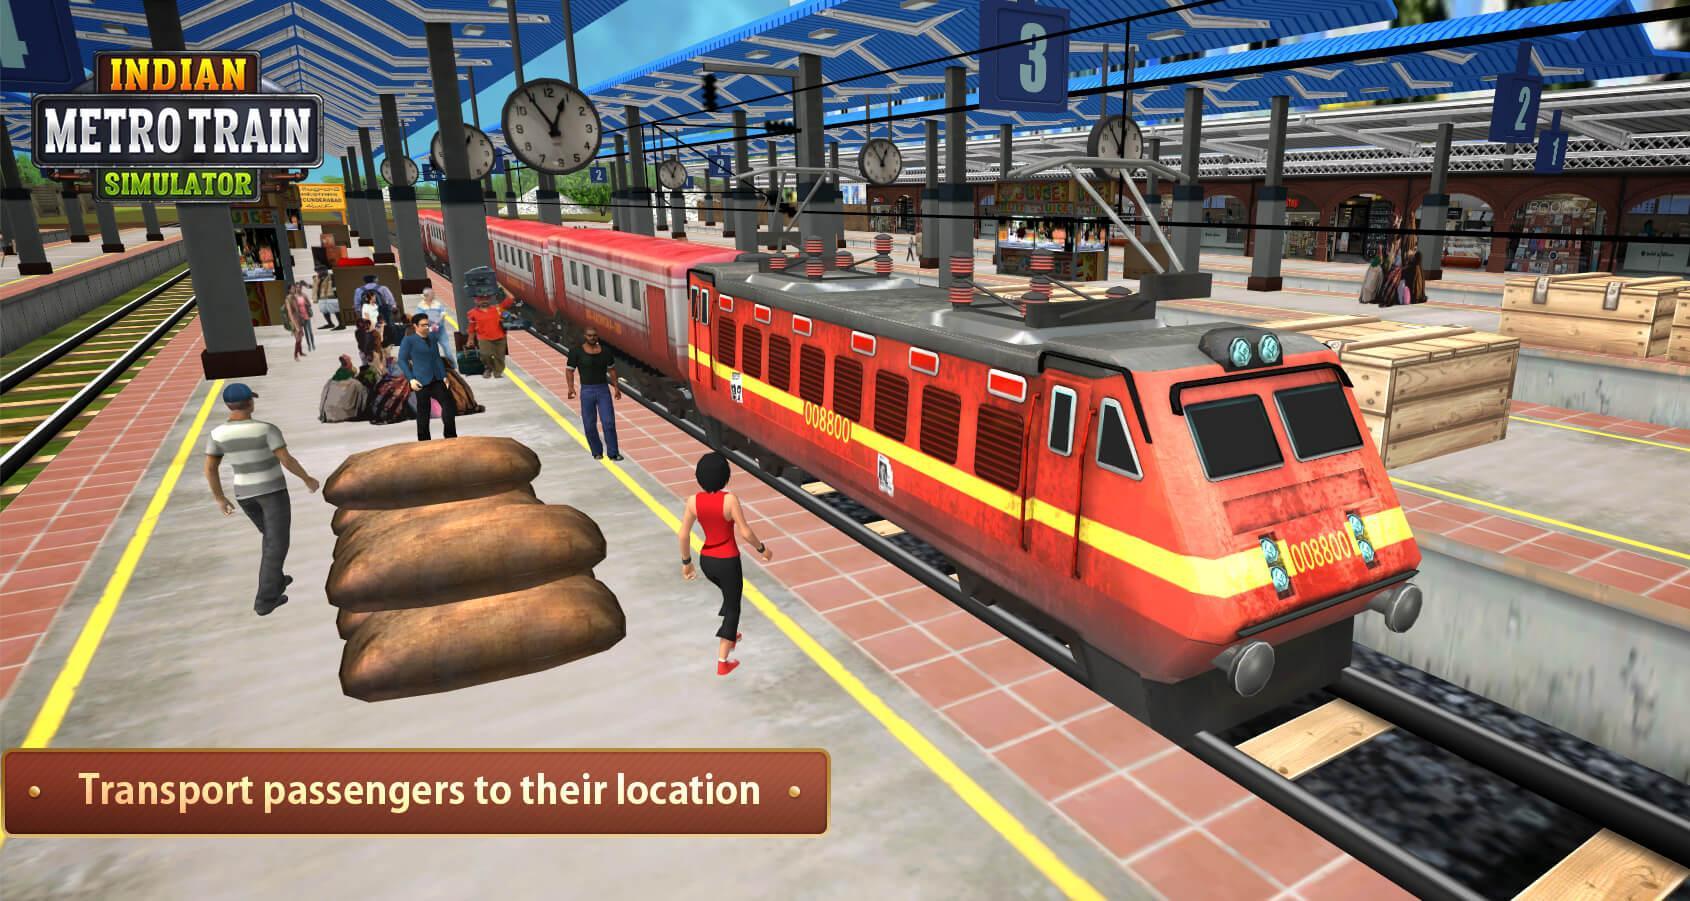 Screenshot 1 of Симулятор поезда индийского метро 2020 5.0